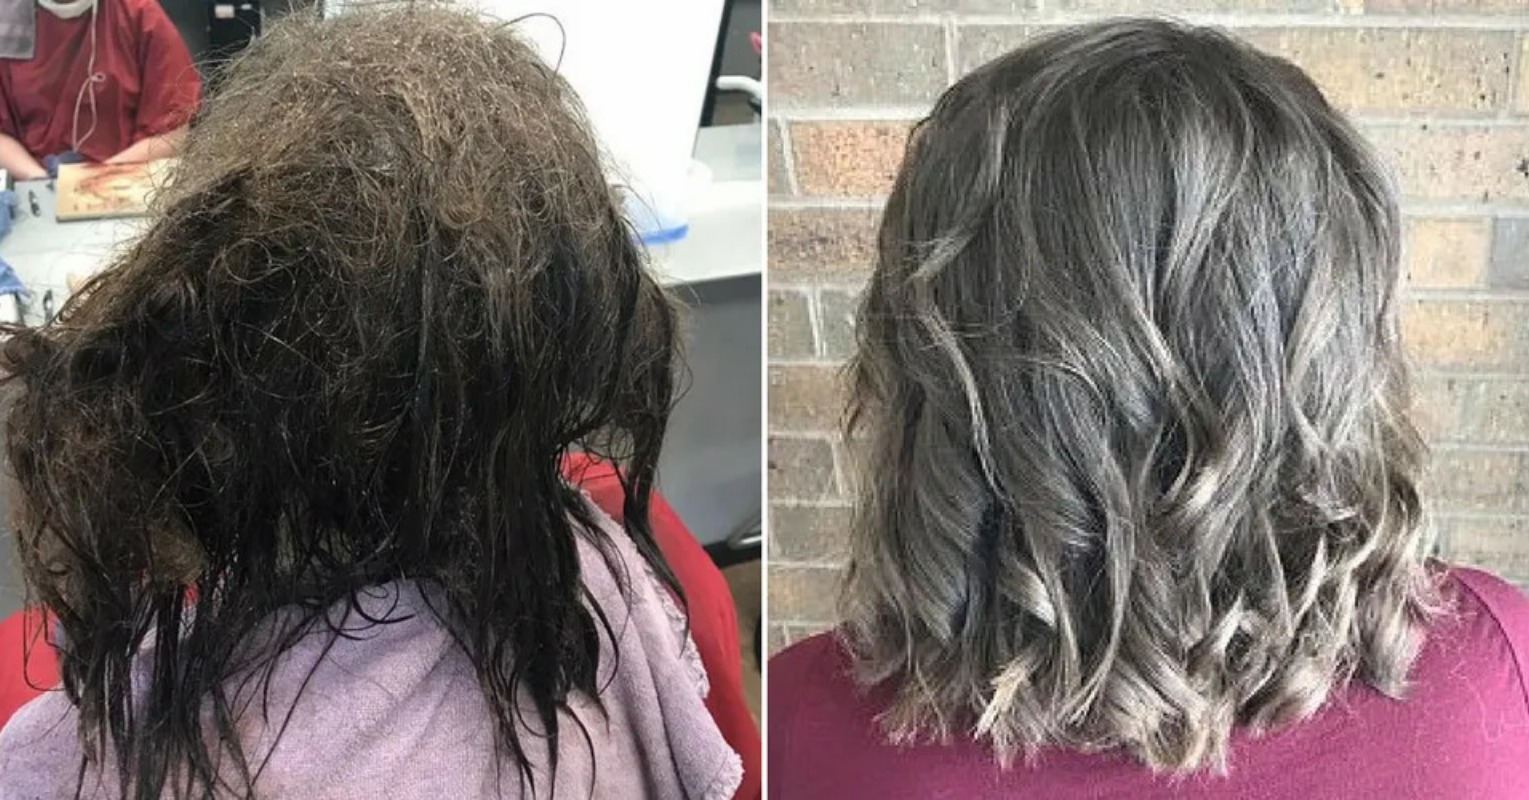 Cabeleireira se recusa a raspar o cabelo emaranhado de adolescente com depressão e passa 13 horas arrumando-o